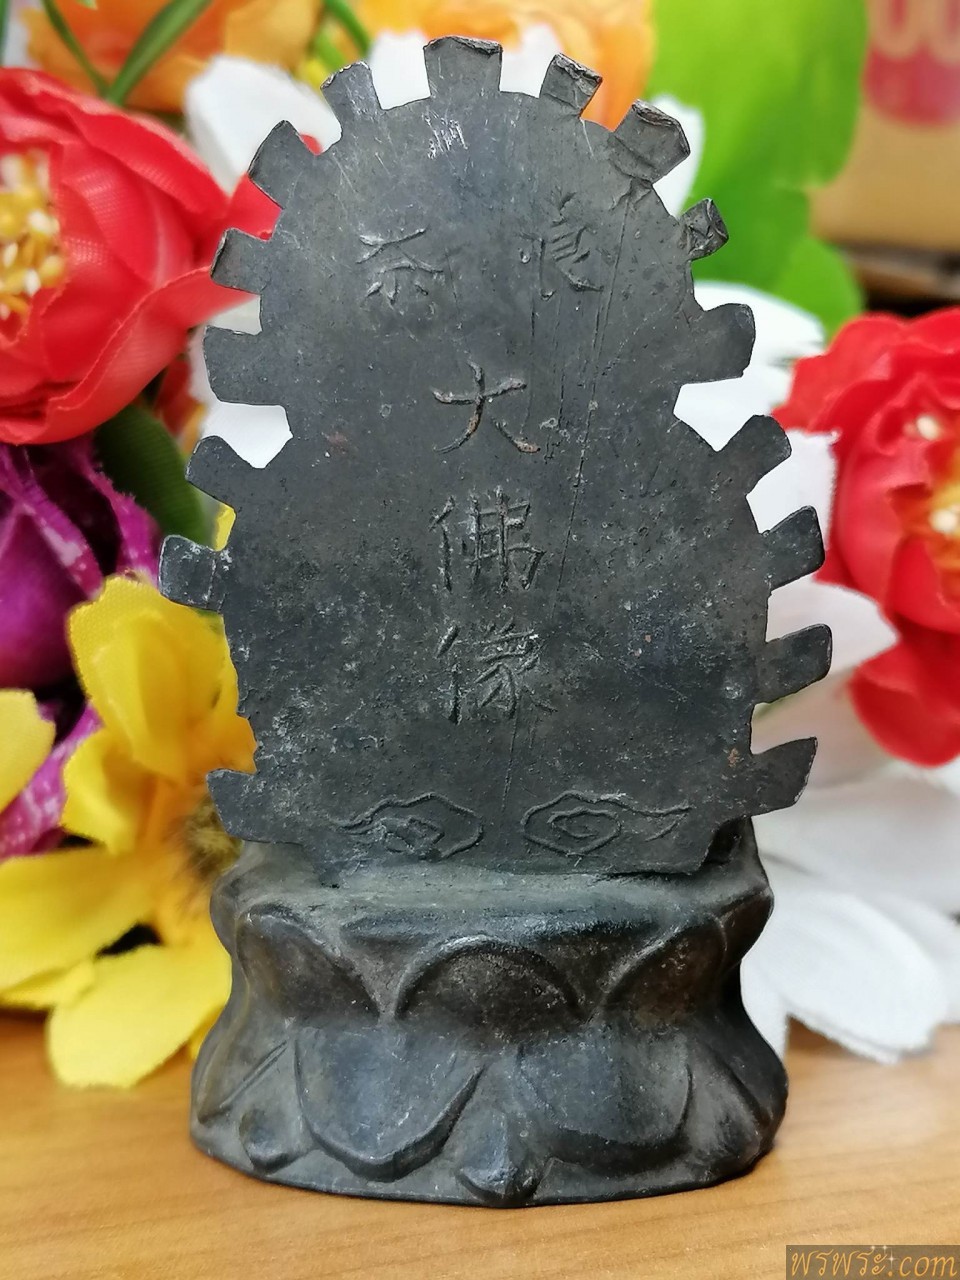 พระทรงจีน พระยูไล ประภามลฑล รูปพระ5องค์ หลังอักษรจีน5คำ เนื้อสัมฤทธิ์ /พบ1องค์ ณ.วันที่07/08/2566//ขนาด 3*4ซม สูง 7วม.